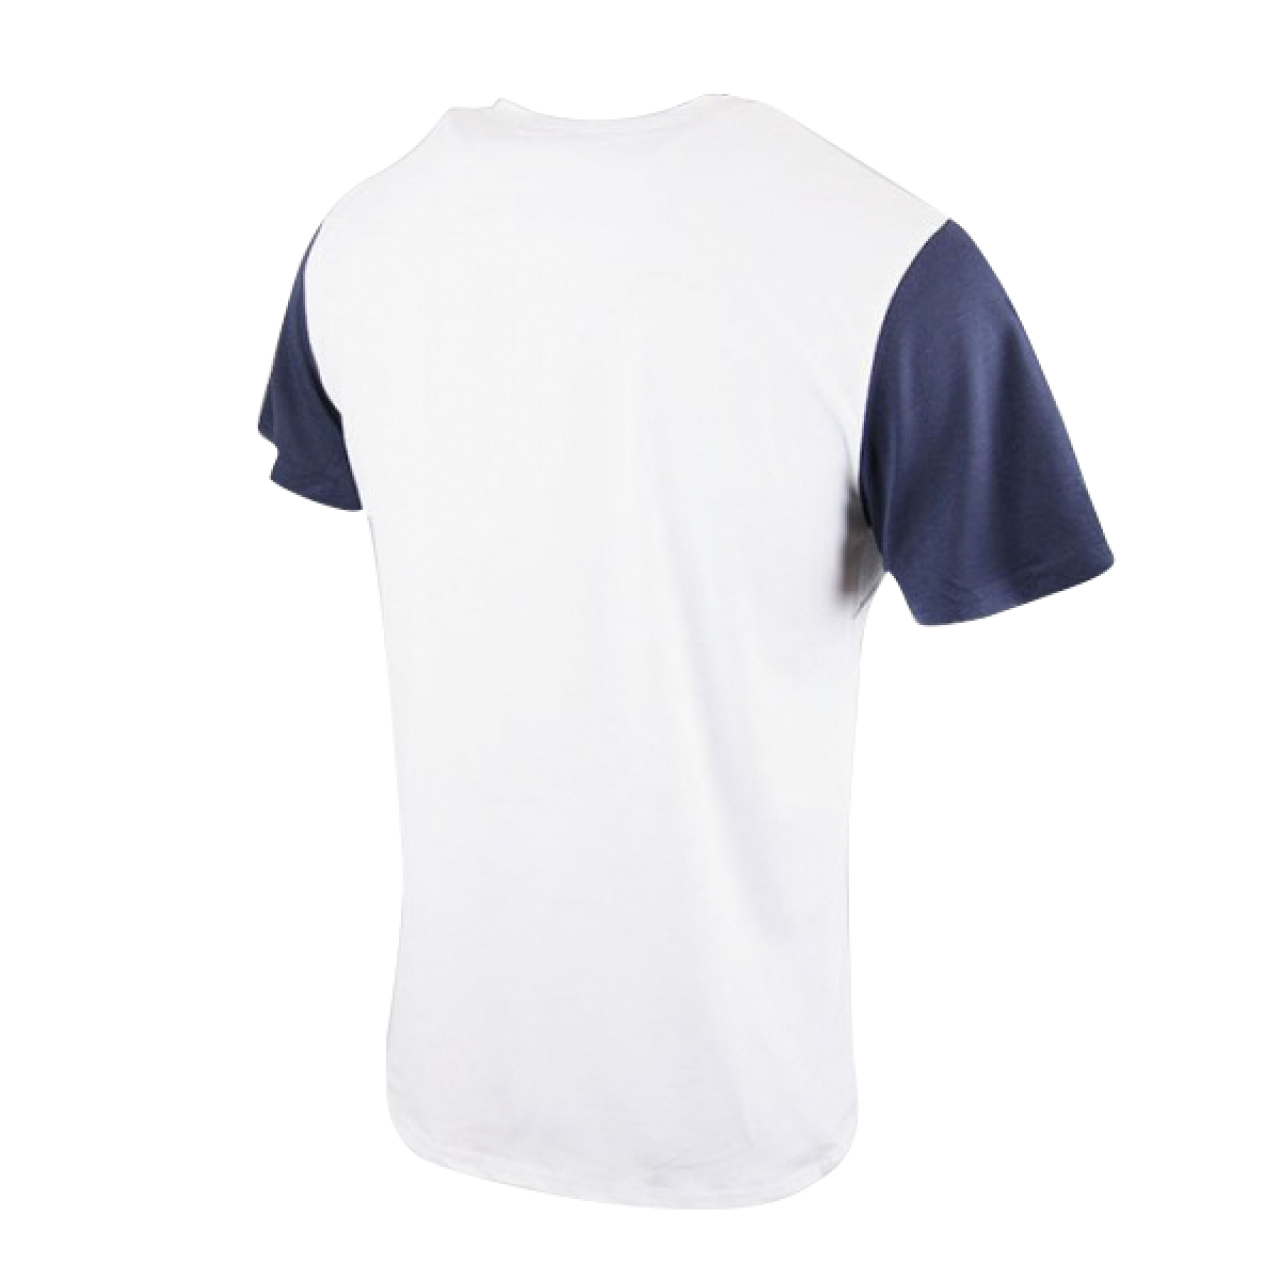 Men's V Neck Cross Pattern White With Navy Blue Short Sleeve Pocket T Shirt Dress